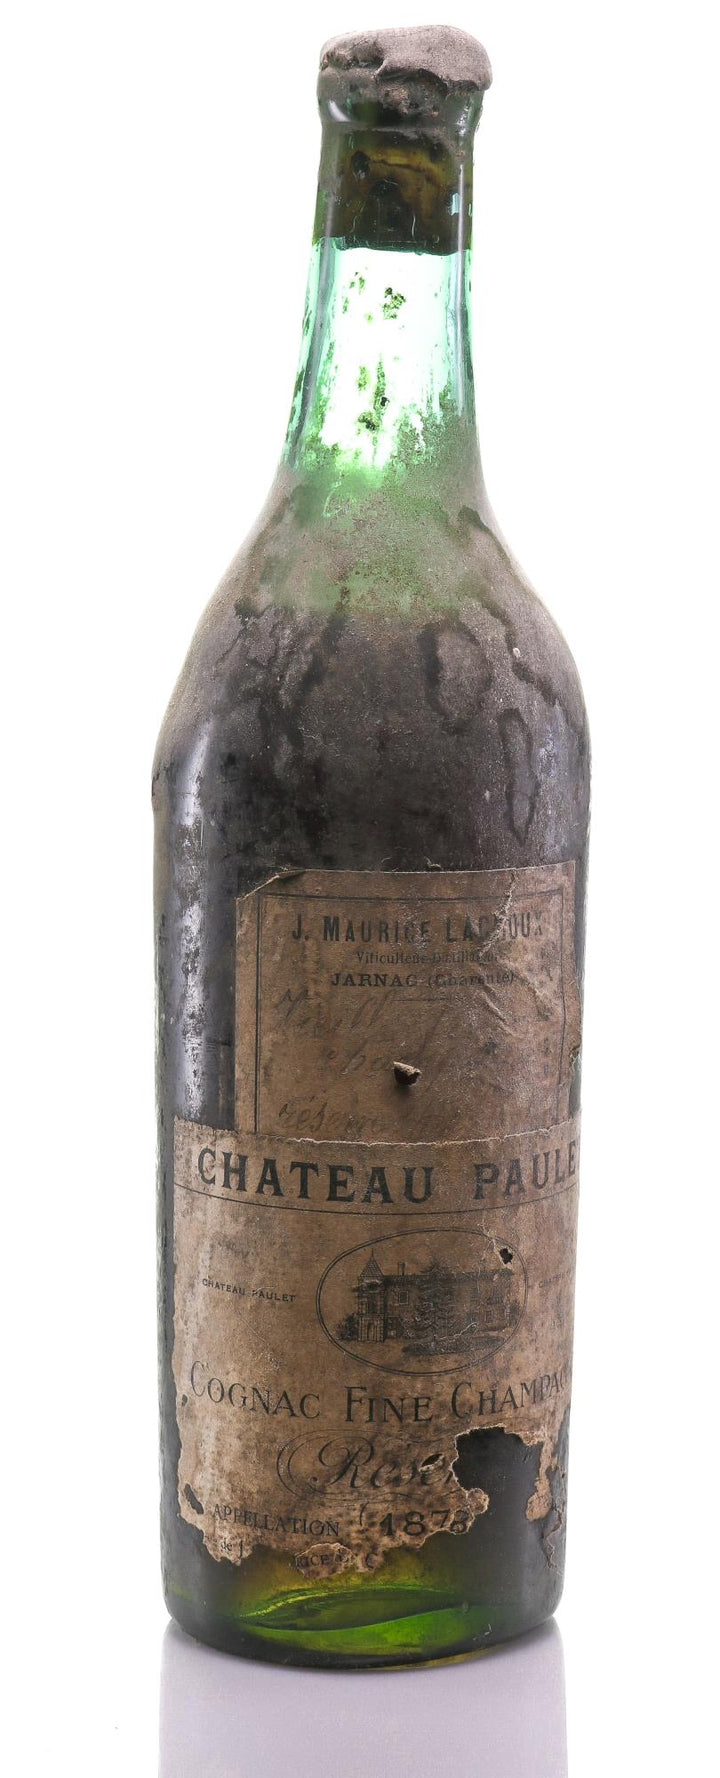 1878 Château Paulet Fine Champagne Réserve Cognac, J. Maurice Lacroux - Rue Pinard